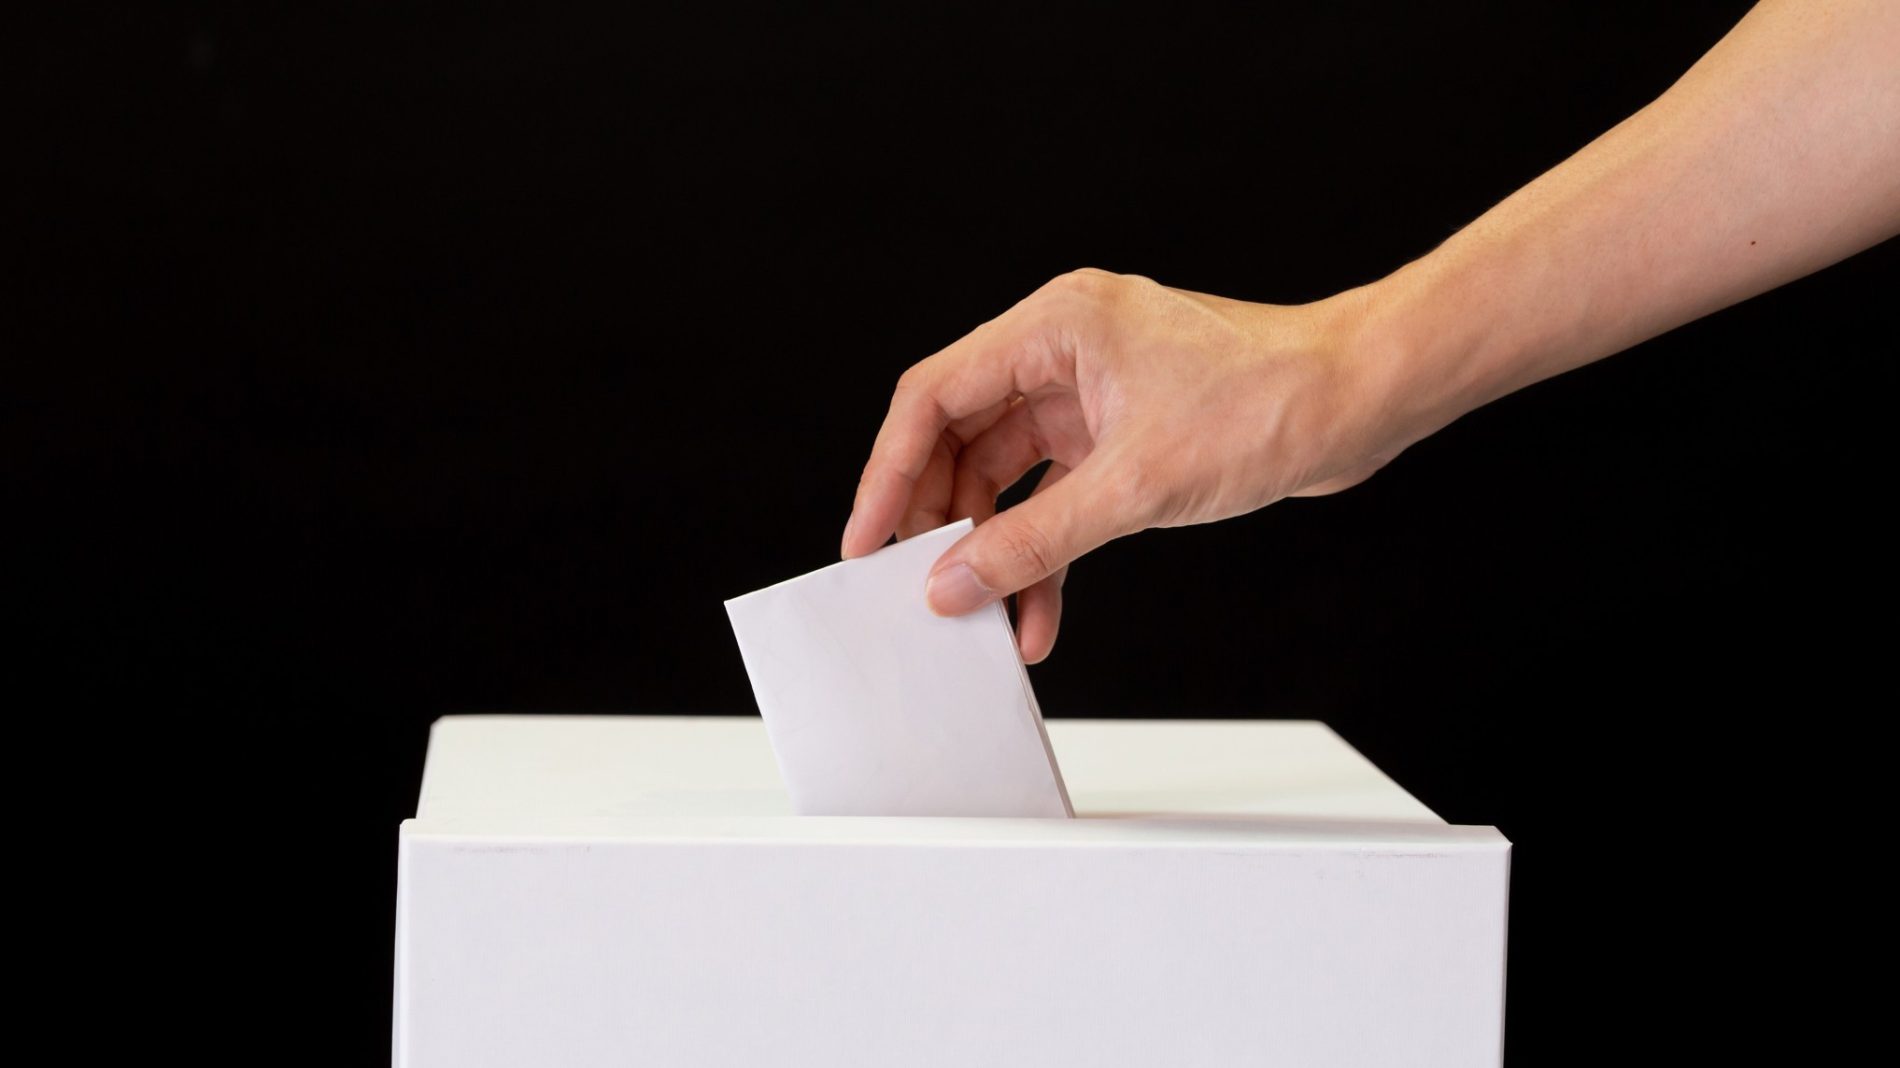 Placing vote in ballot box